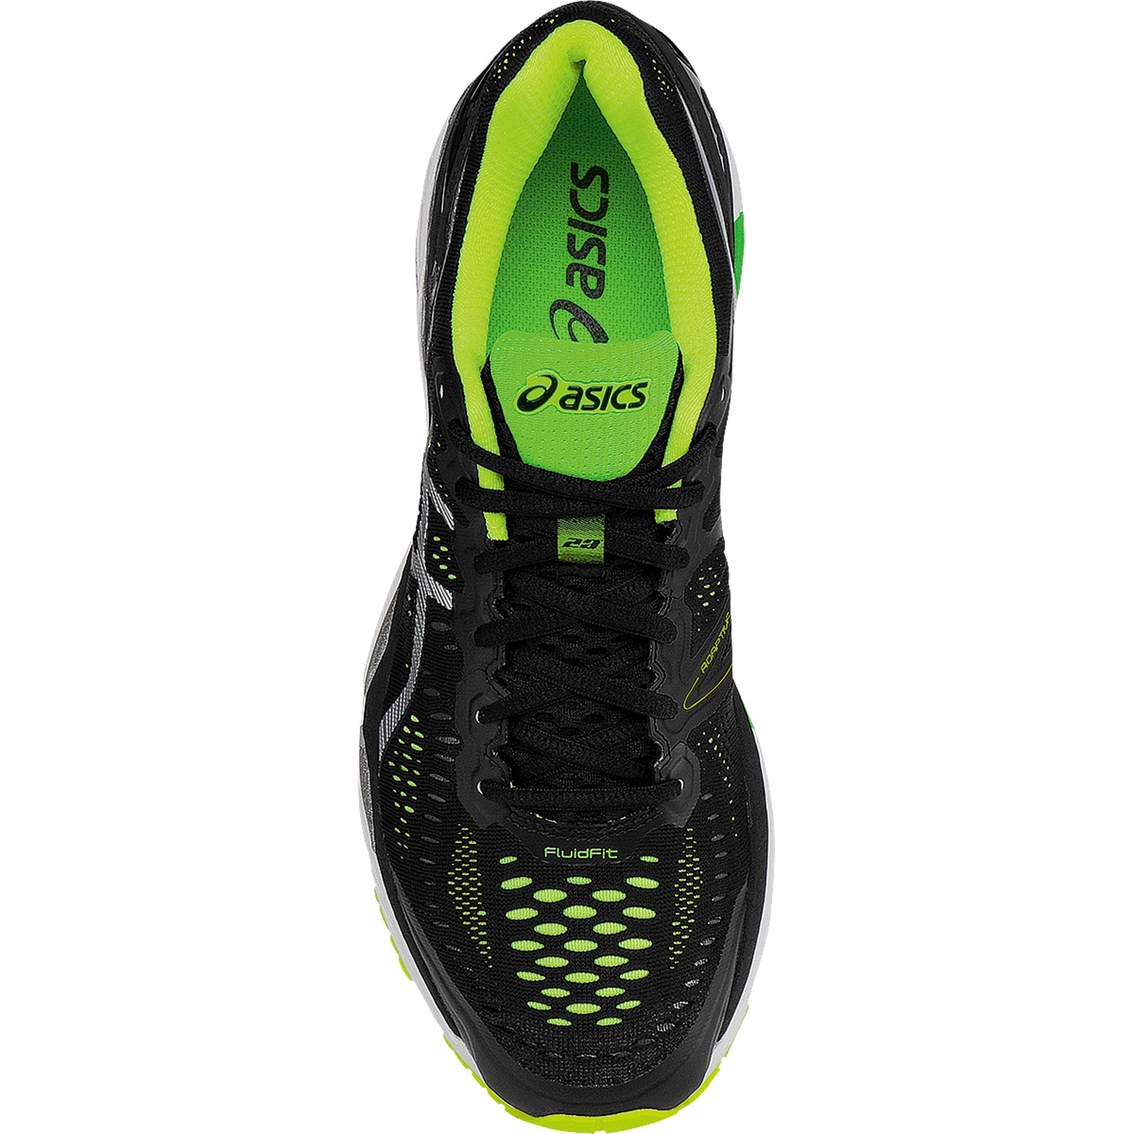 ASICS Men's GEL-Kayano 23 Running Shoes - Image 3 of 4